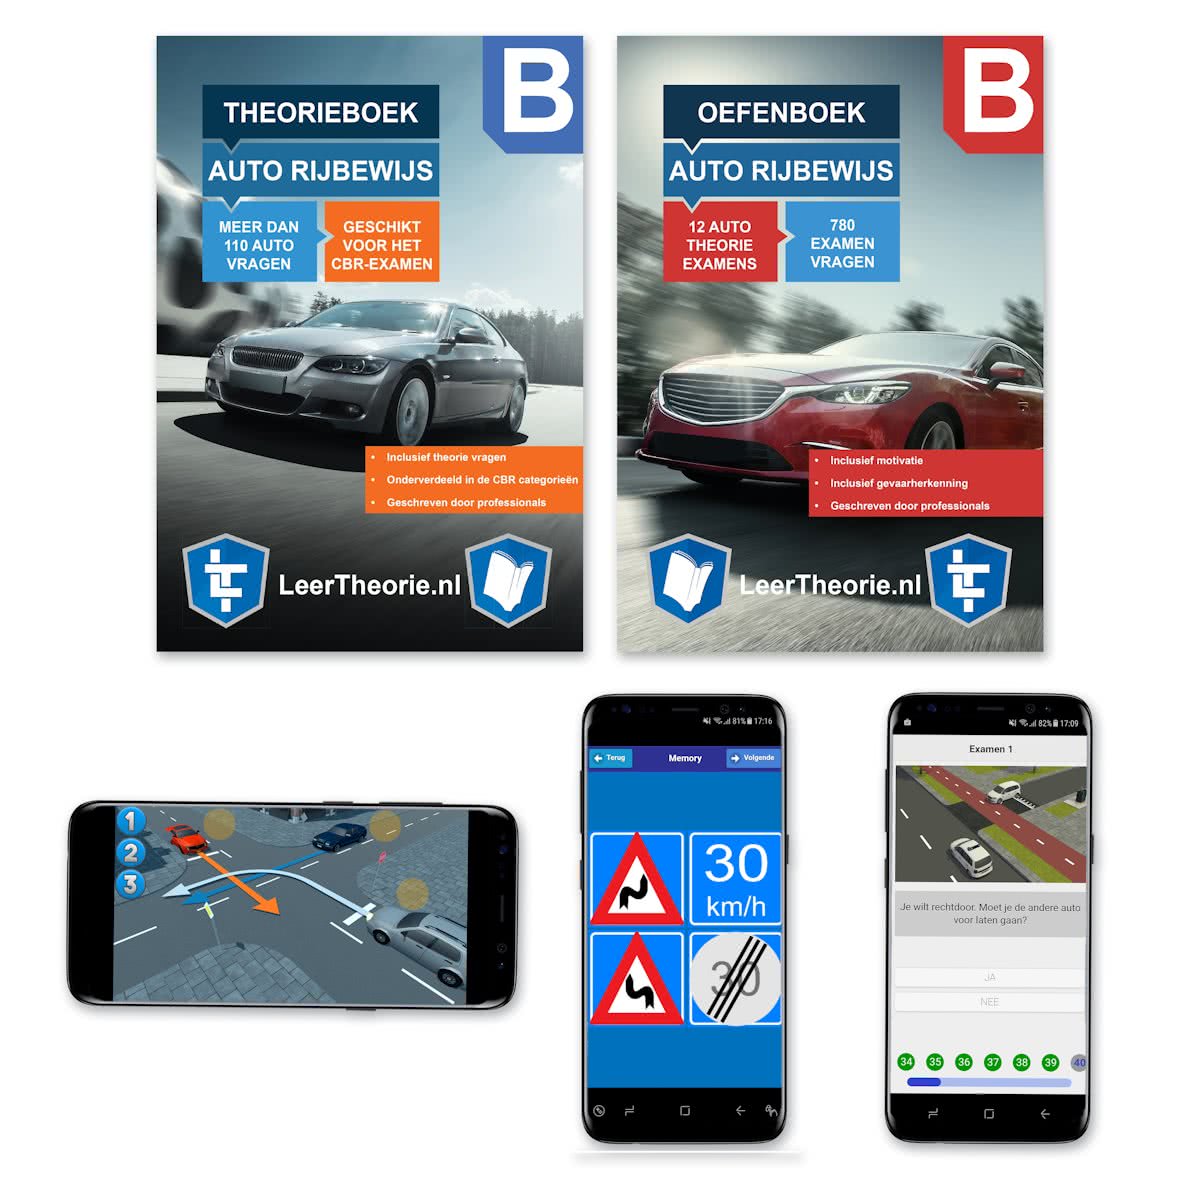 rijbewijstheorieboeken.nl-Theorieboek-Oefenboek-Mobiel-Auto-Rijbewijs-B-Nederland-Autotheorie-LeerTheorie